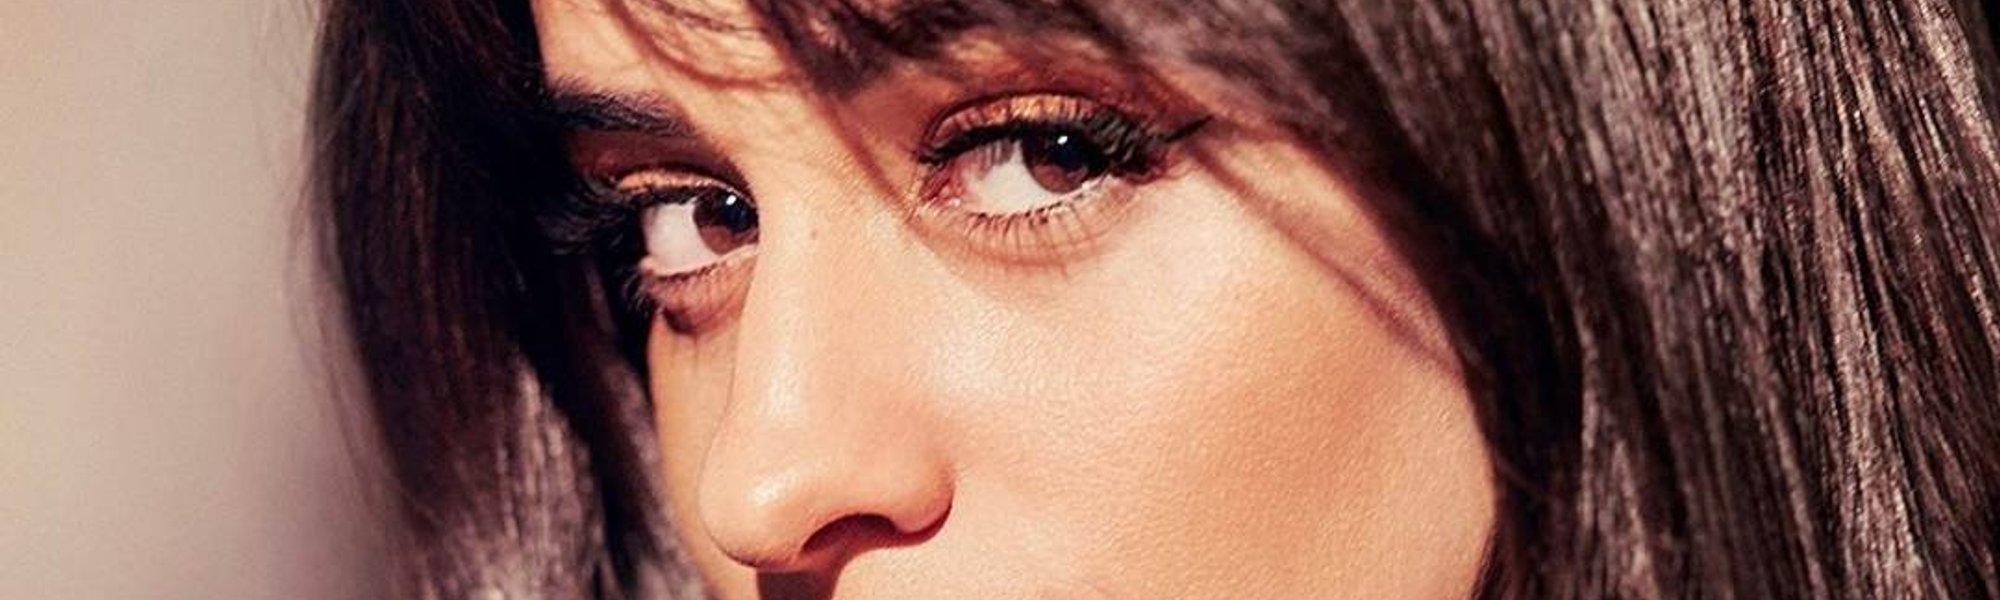 Beneficios y ventajas de usar un maquillaje con niacinamida| L'Oréal Paris